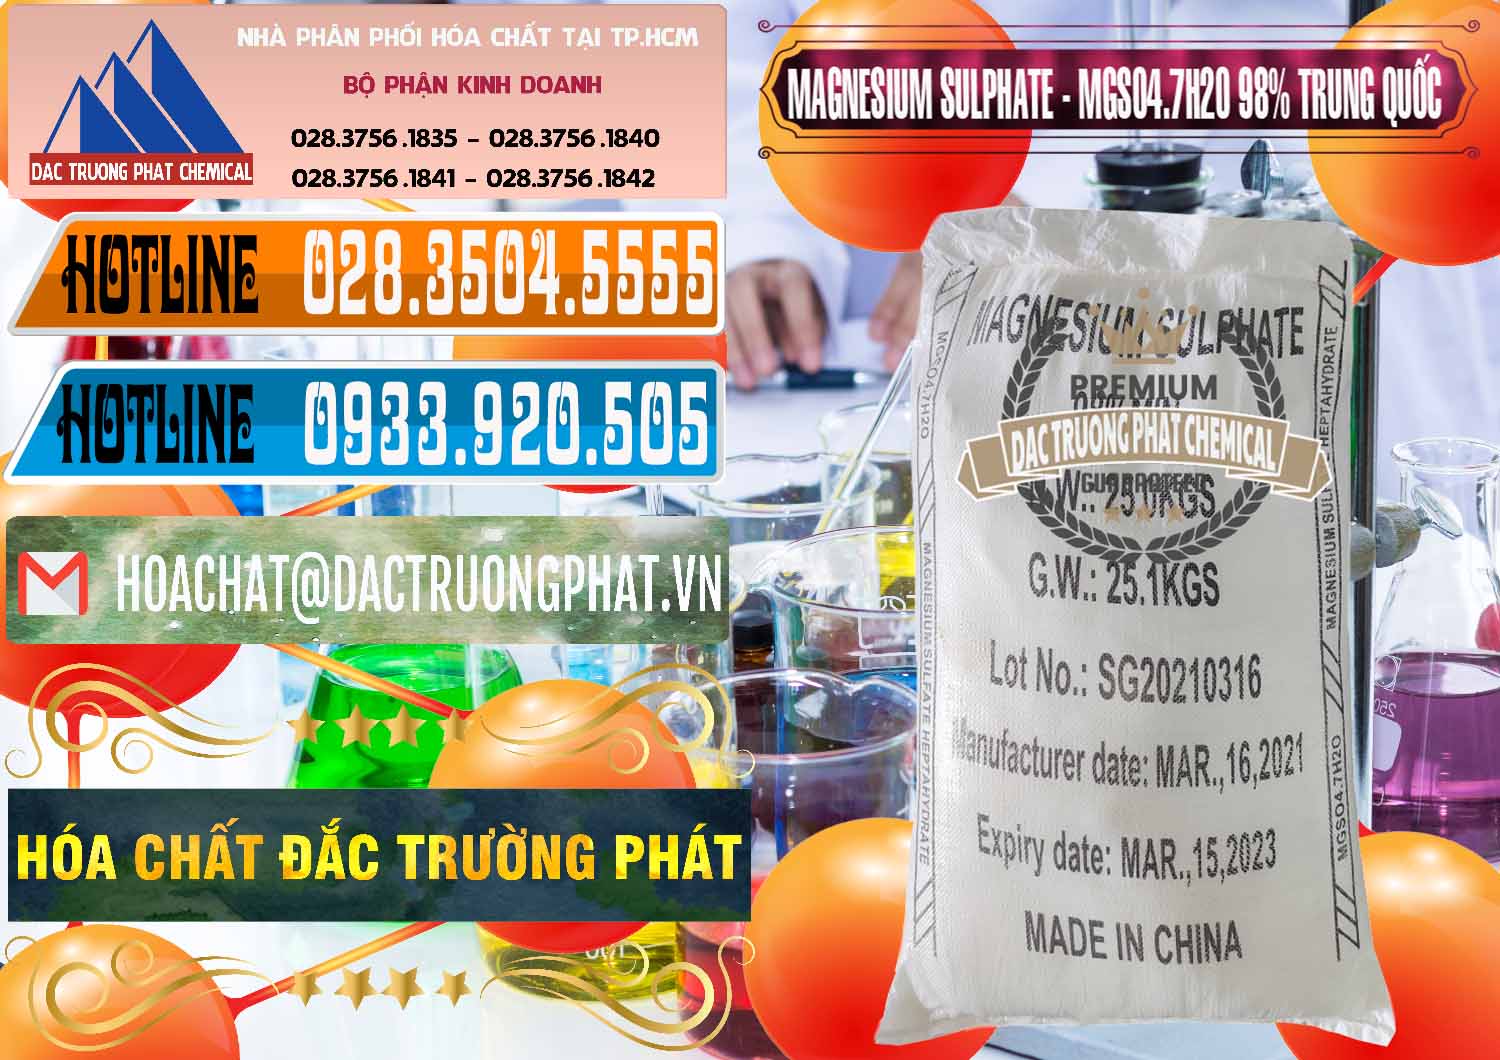 Chuyên cung ứng và bán MGSO4.7H2O – Magnesium Sulphate 98% Trung Quốc China - 0229 - Chuyên phân phối và cung cấp hóa chất tại TP.HCM - stmp.net